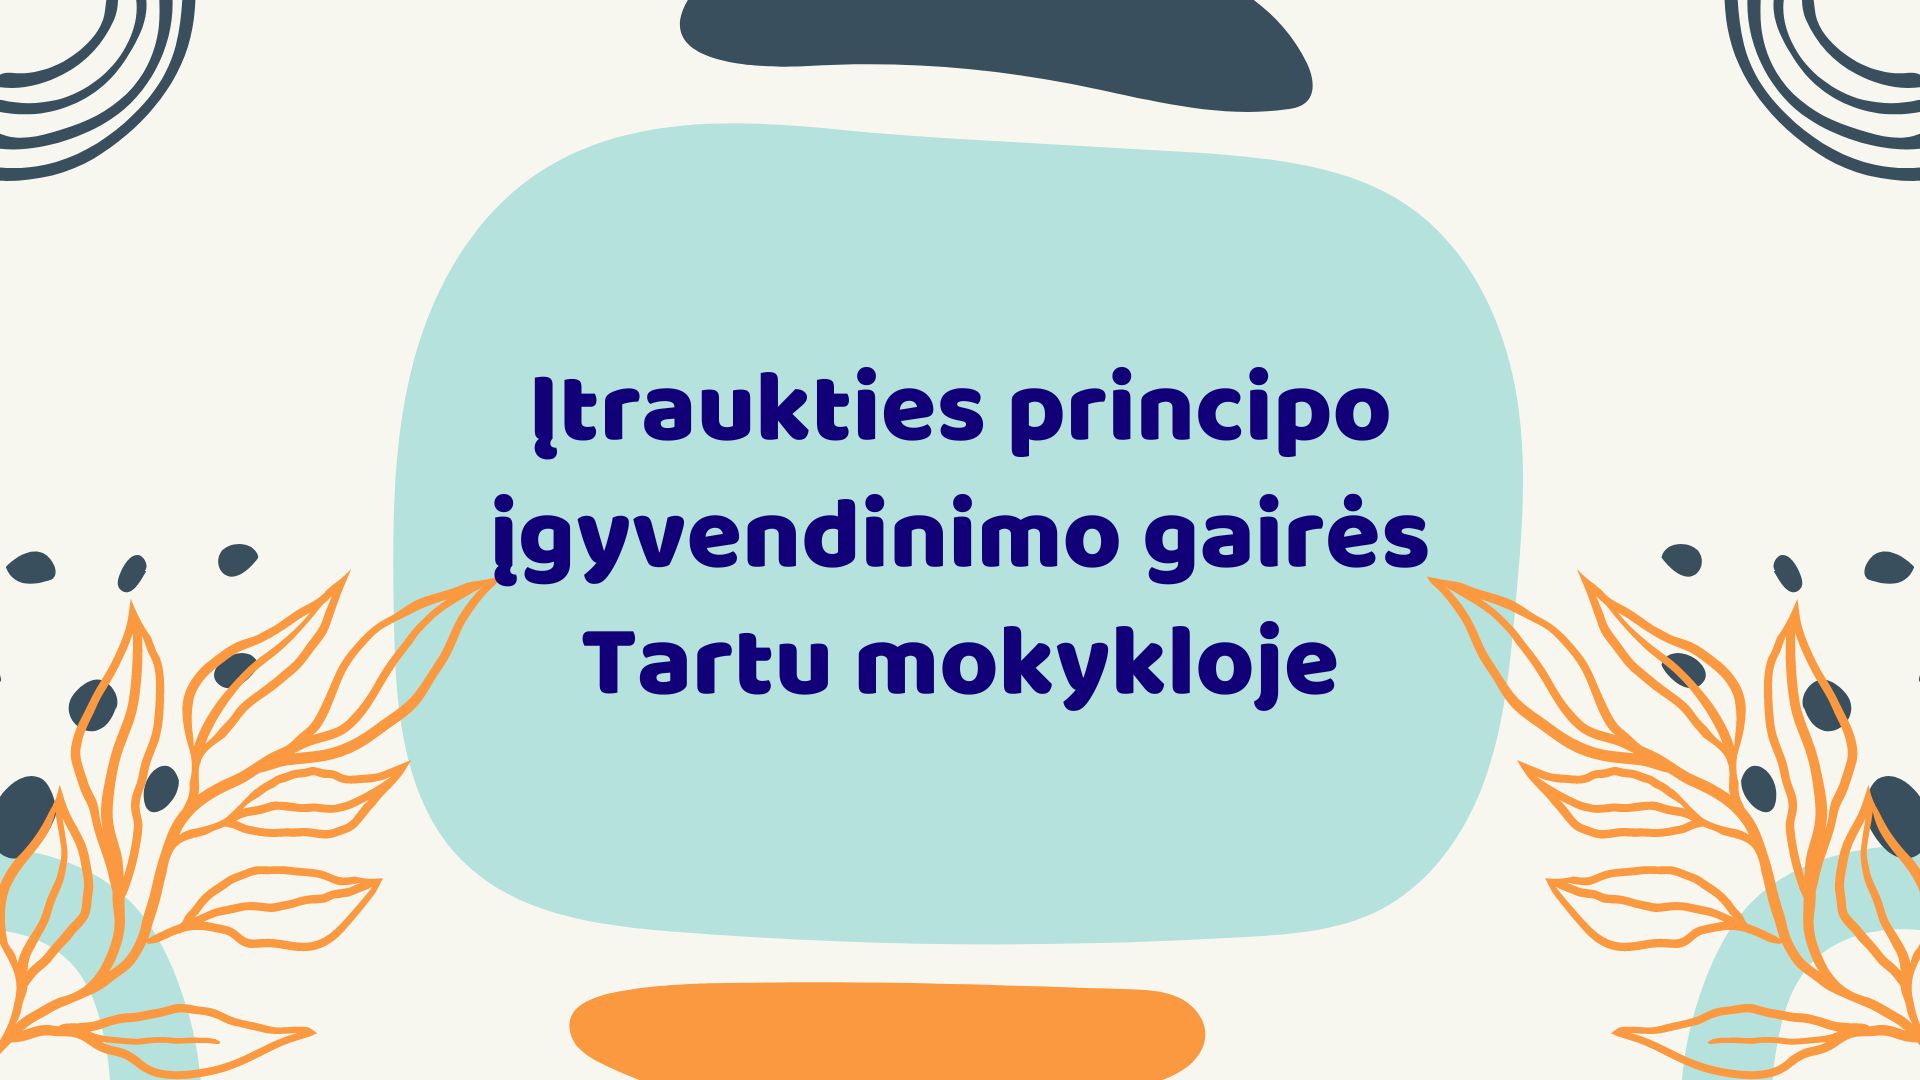 Įtraukties principo įgyvendinimo gairės Tartu mokykloje